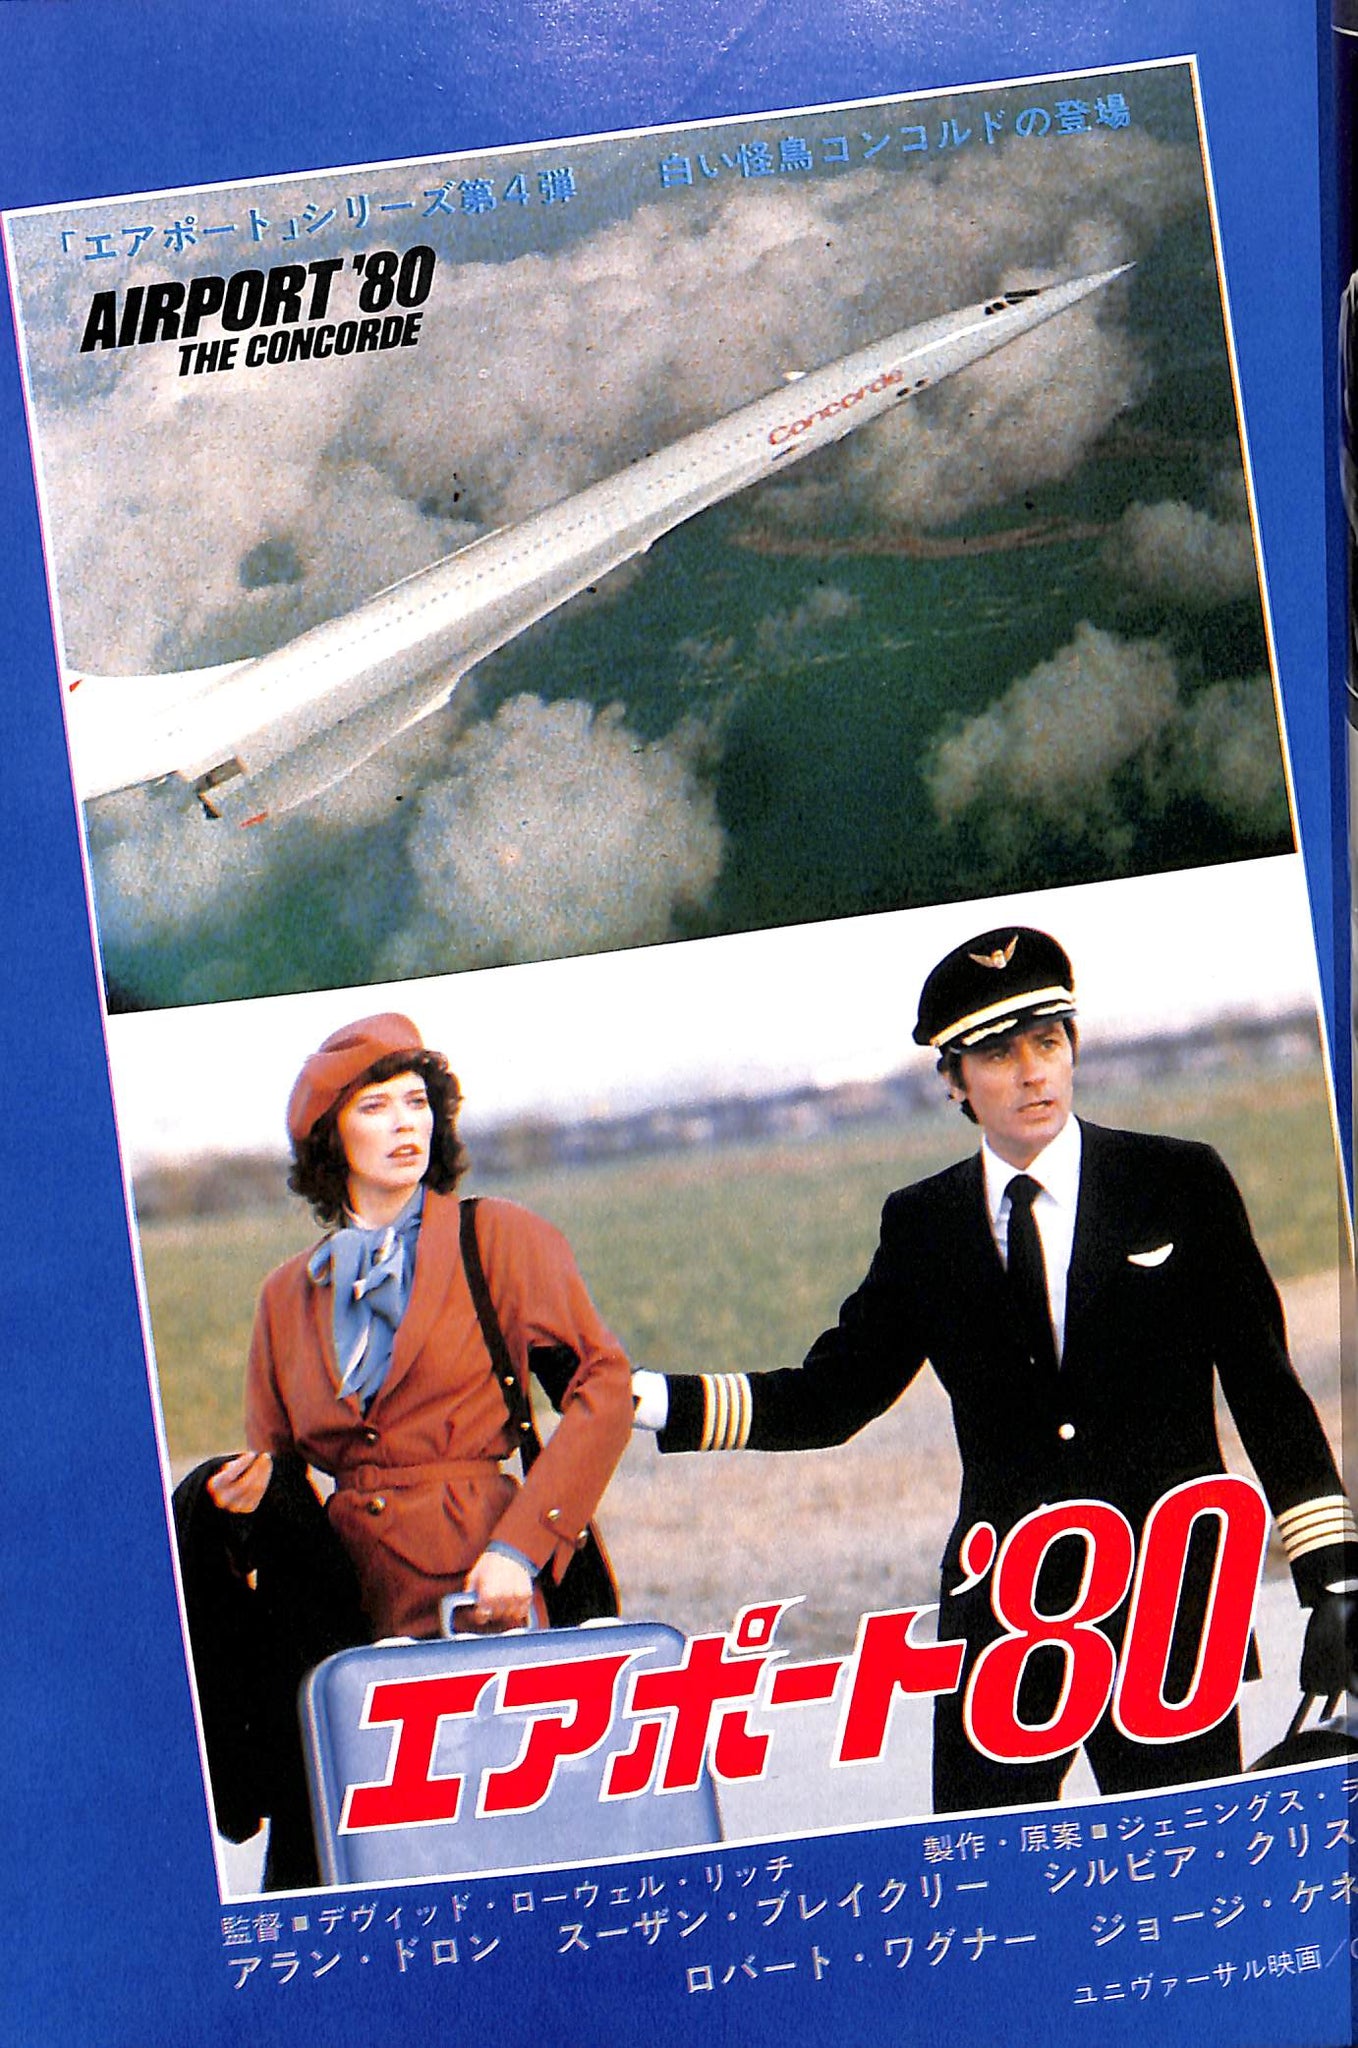 キネマ旬報 1979年12月 上旬号 表紙の映画 :「エアポート '80」(アラン 